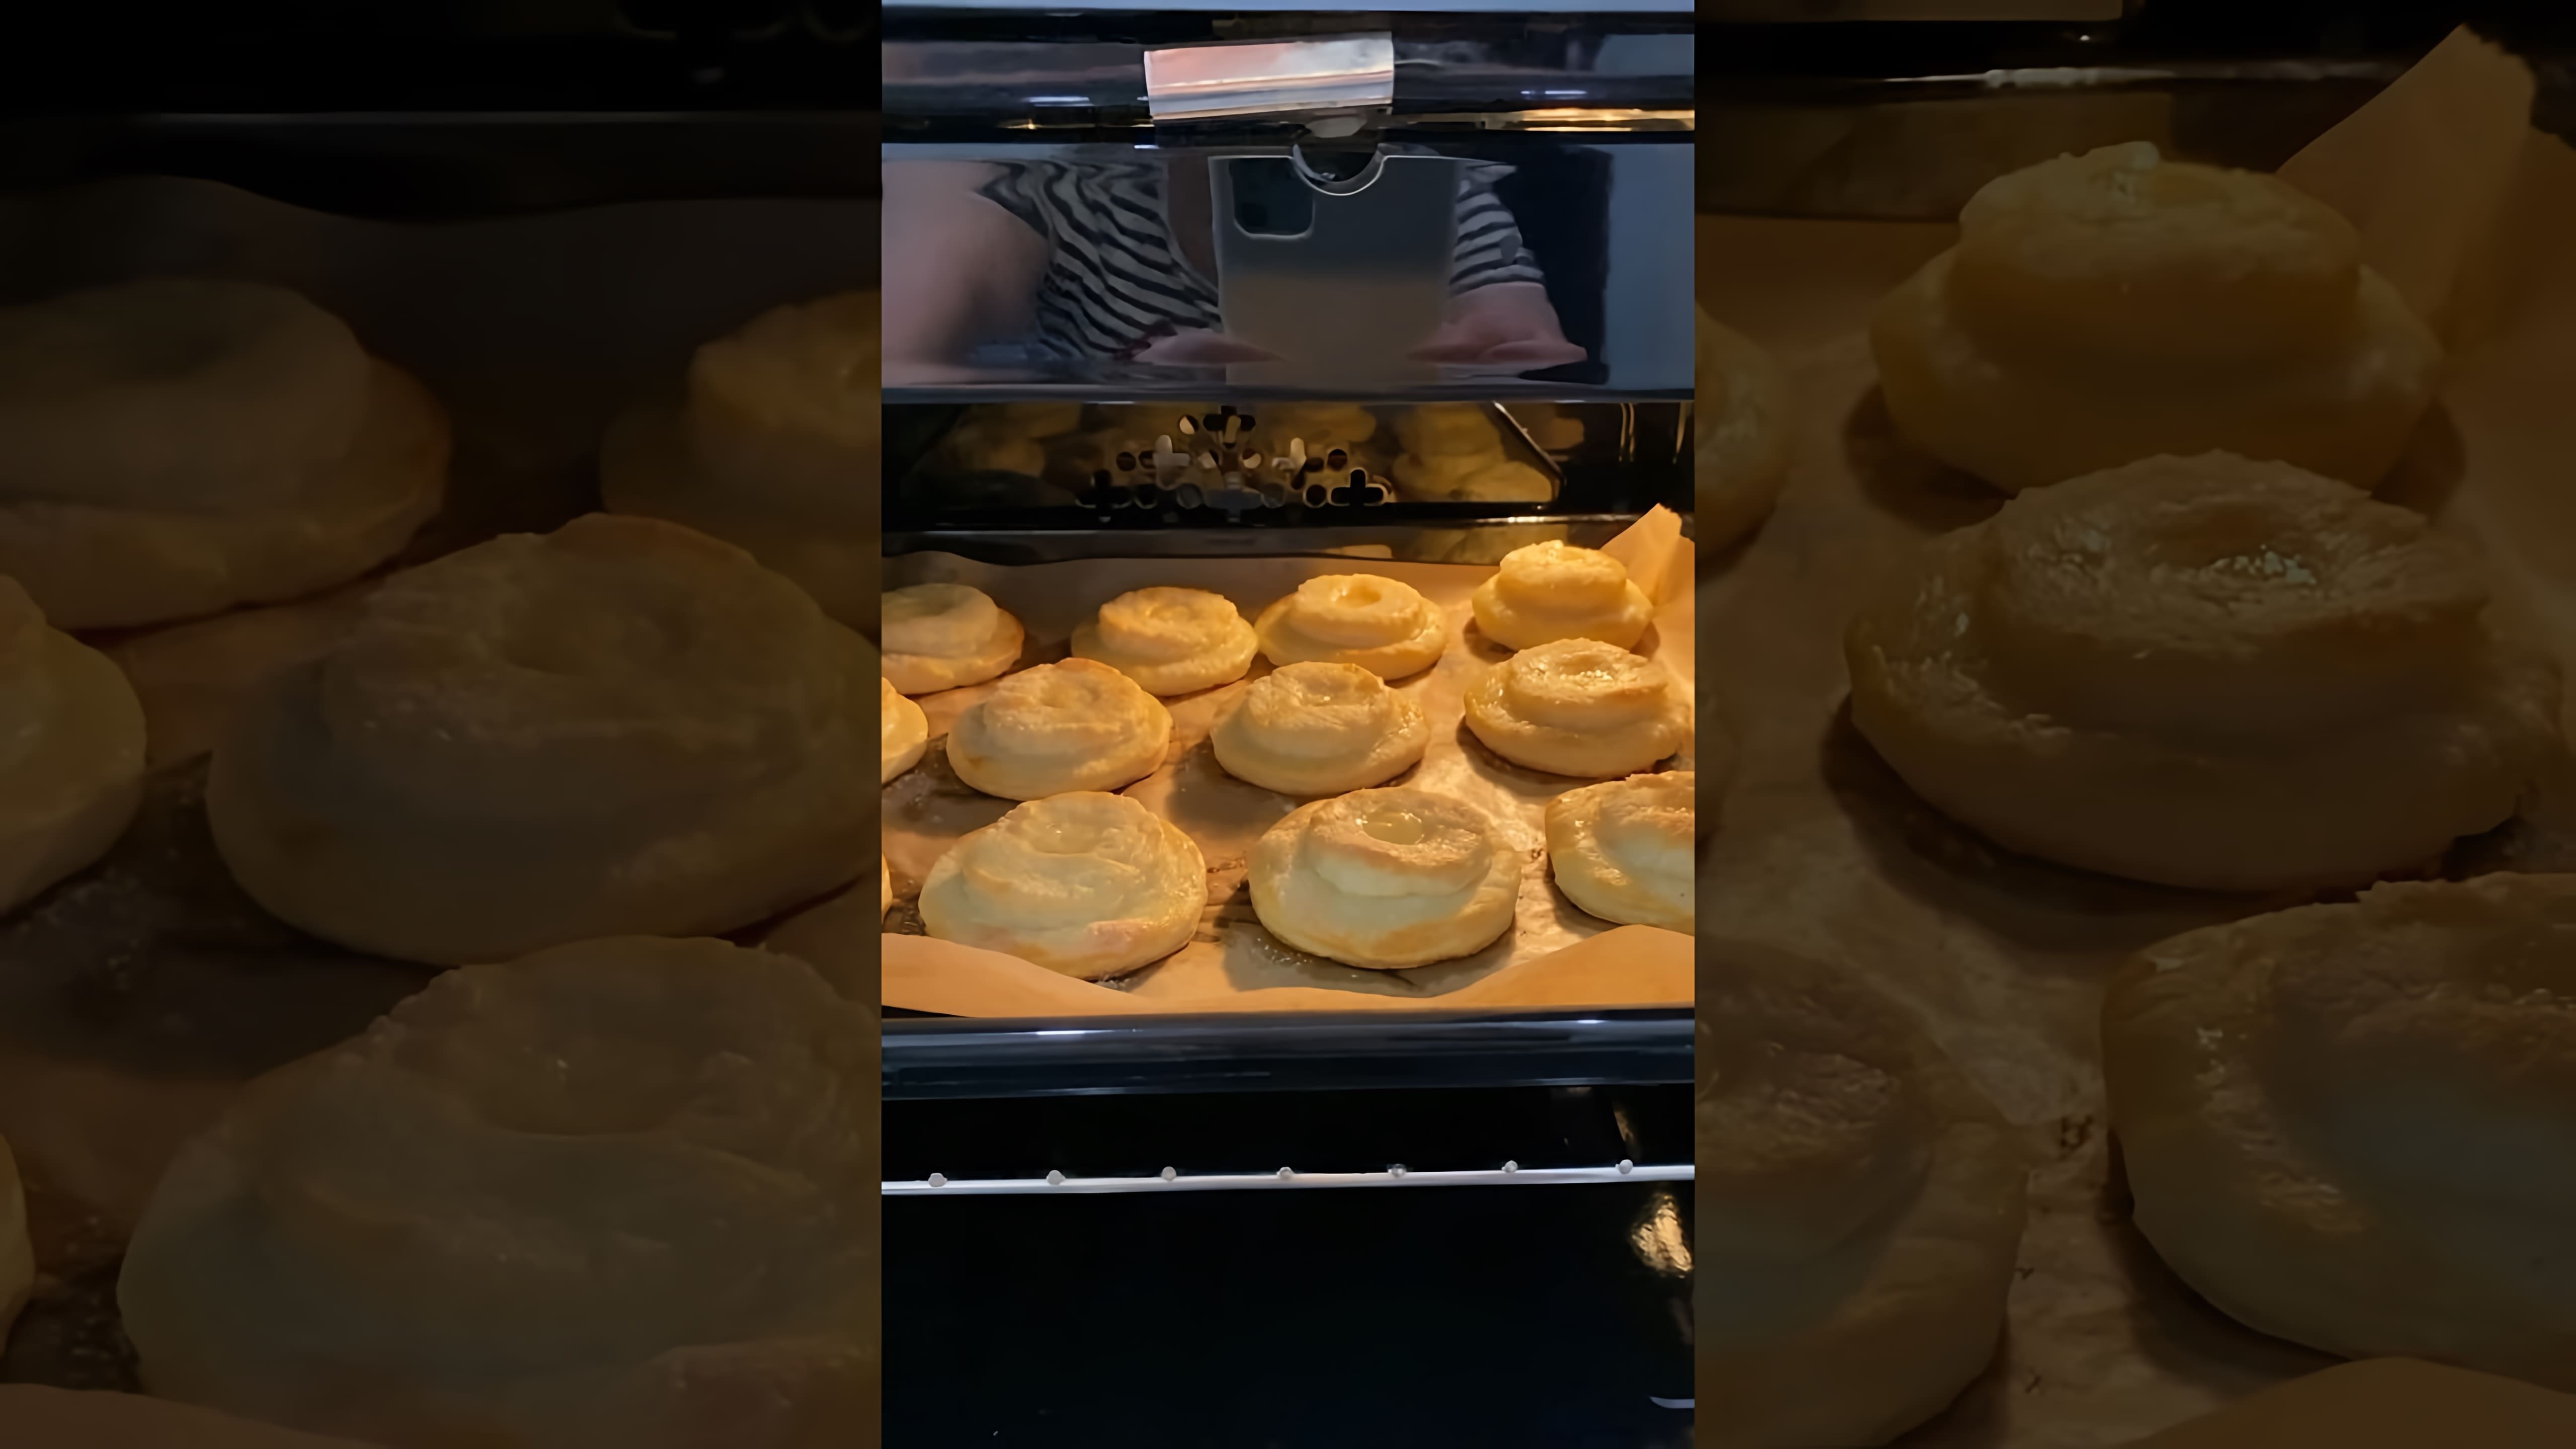 В этом видео-ролике мы увидим процесс приготовления вкусного и полезного десерта - творожной лакомки